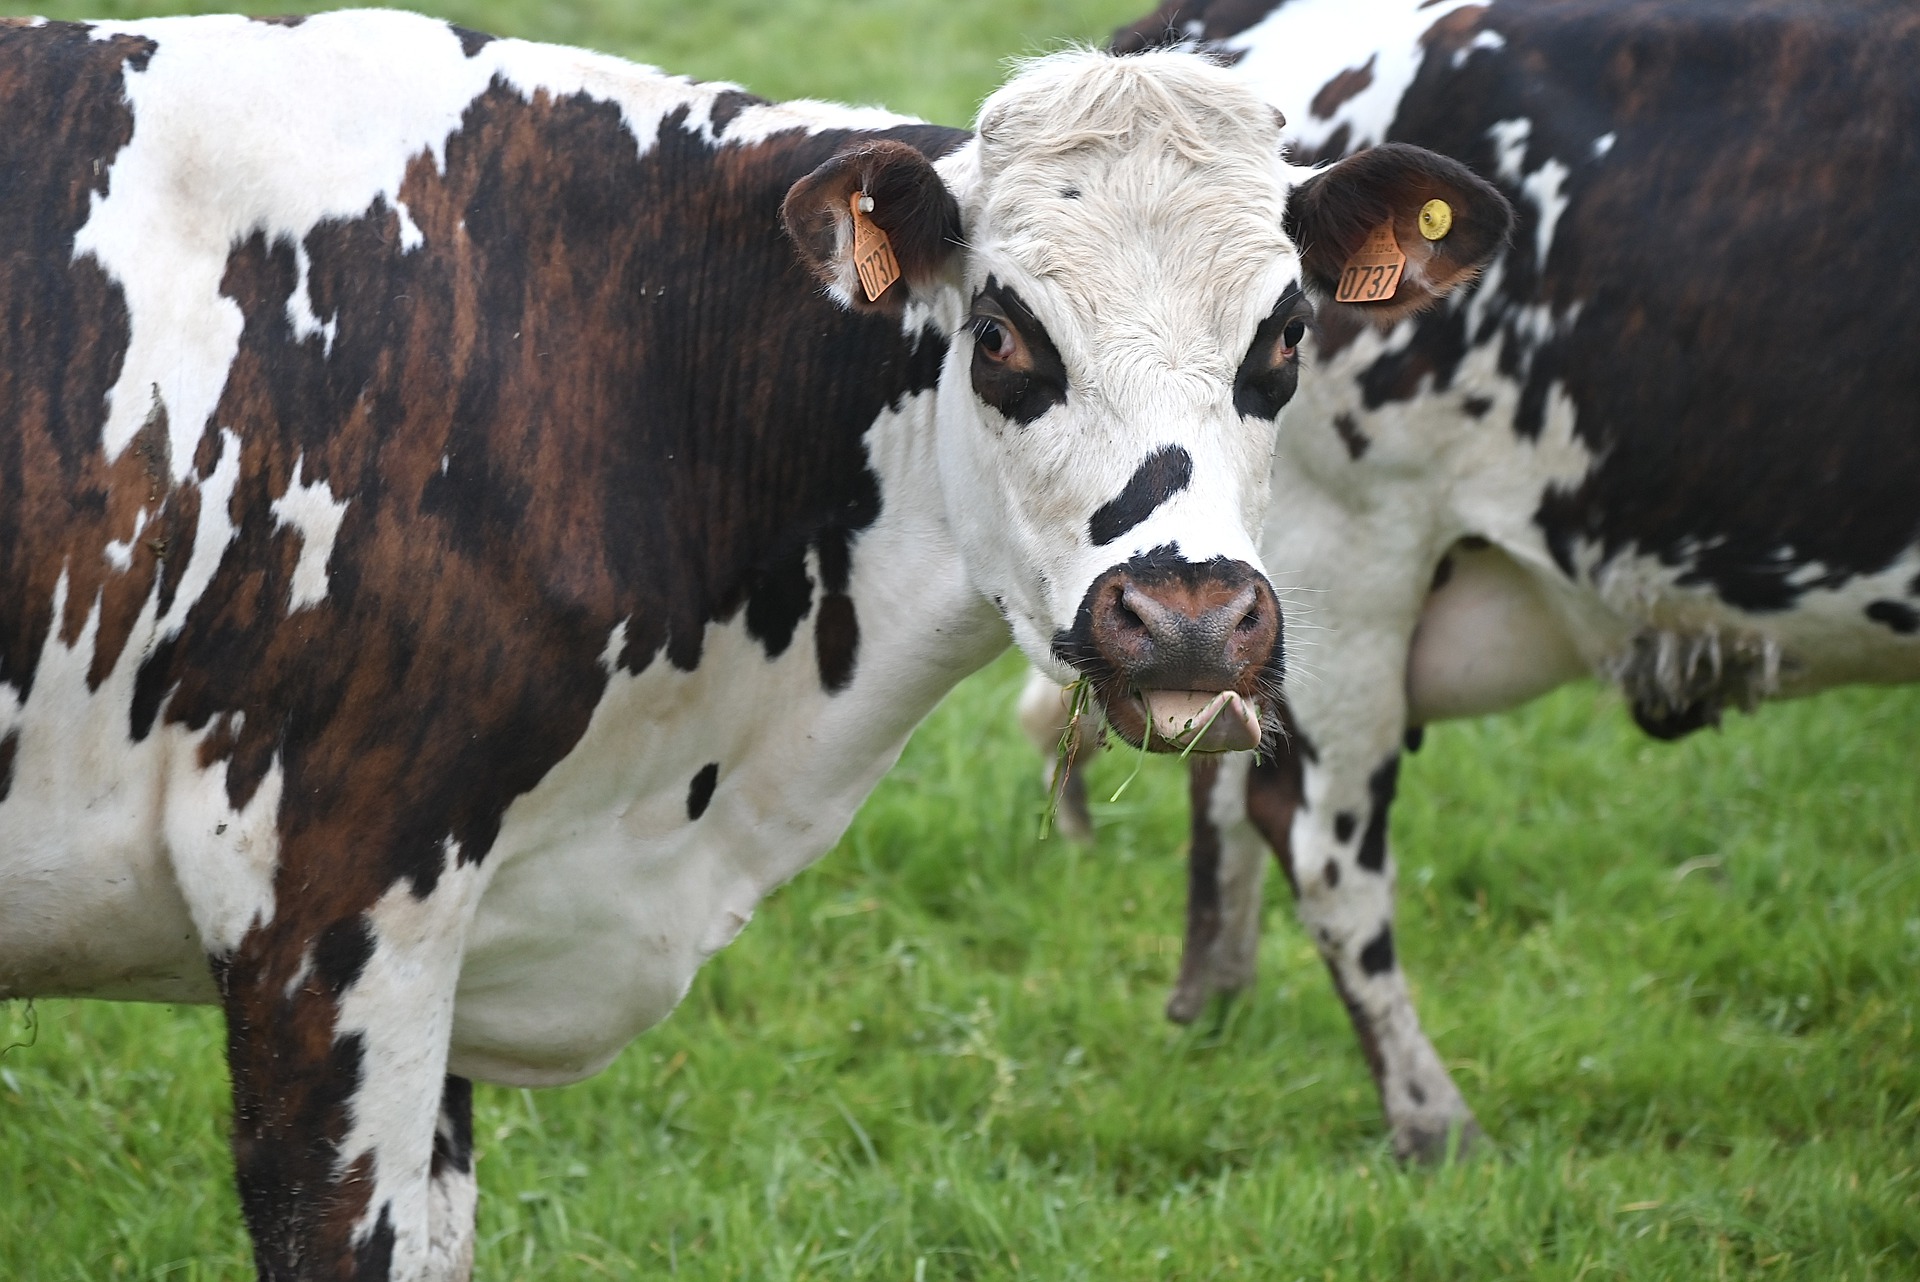 32 losgebroken koeien zetten dorp op stelten: koeien lopen onder andere op begraafplaats